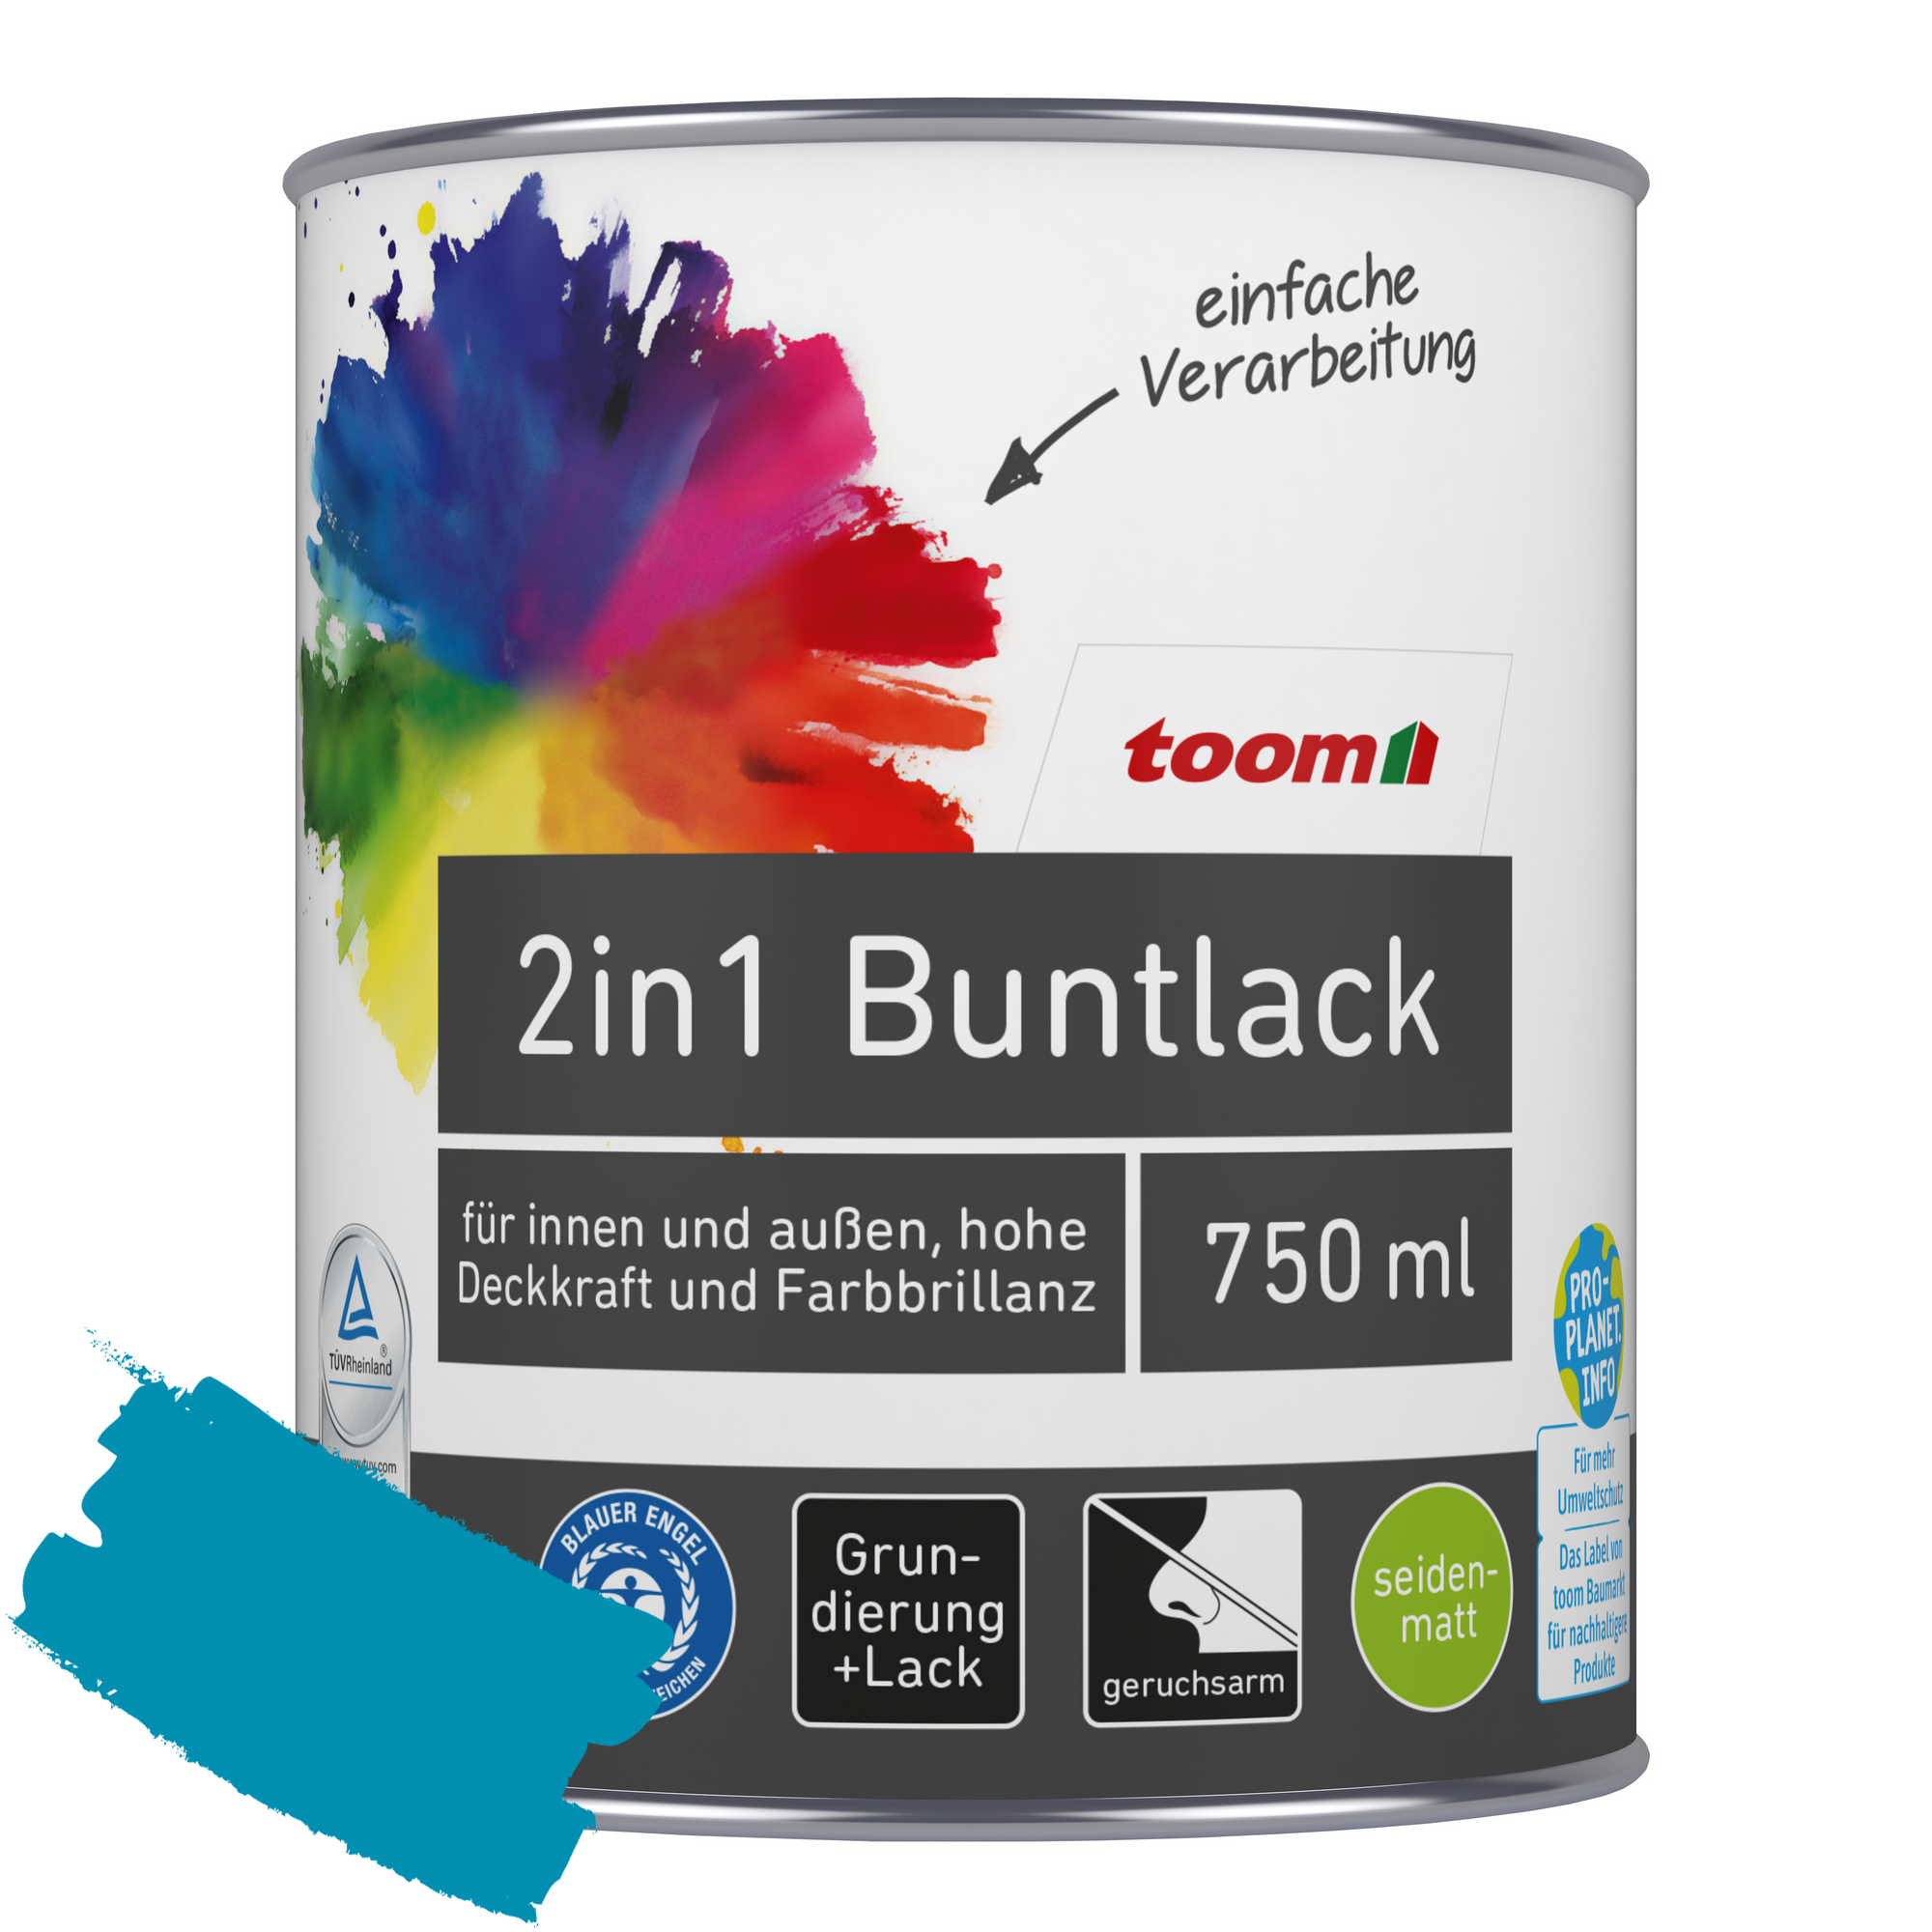 2in1 Buntlack 'Aquamarine' lichtblau seidenmatt 750 ml + product picture